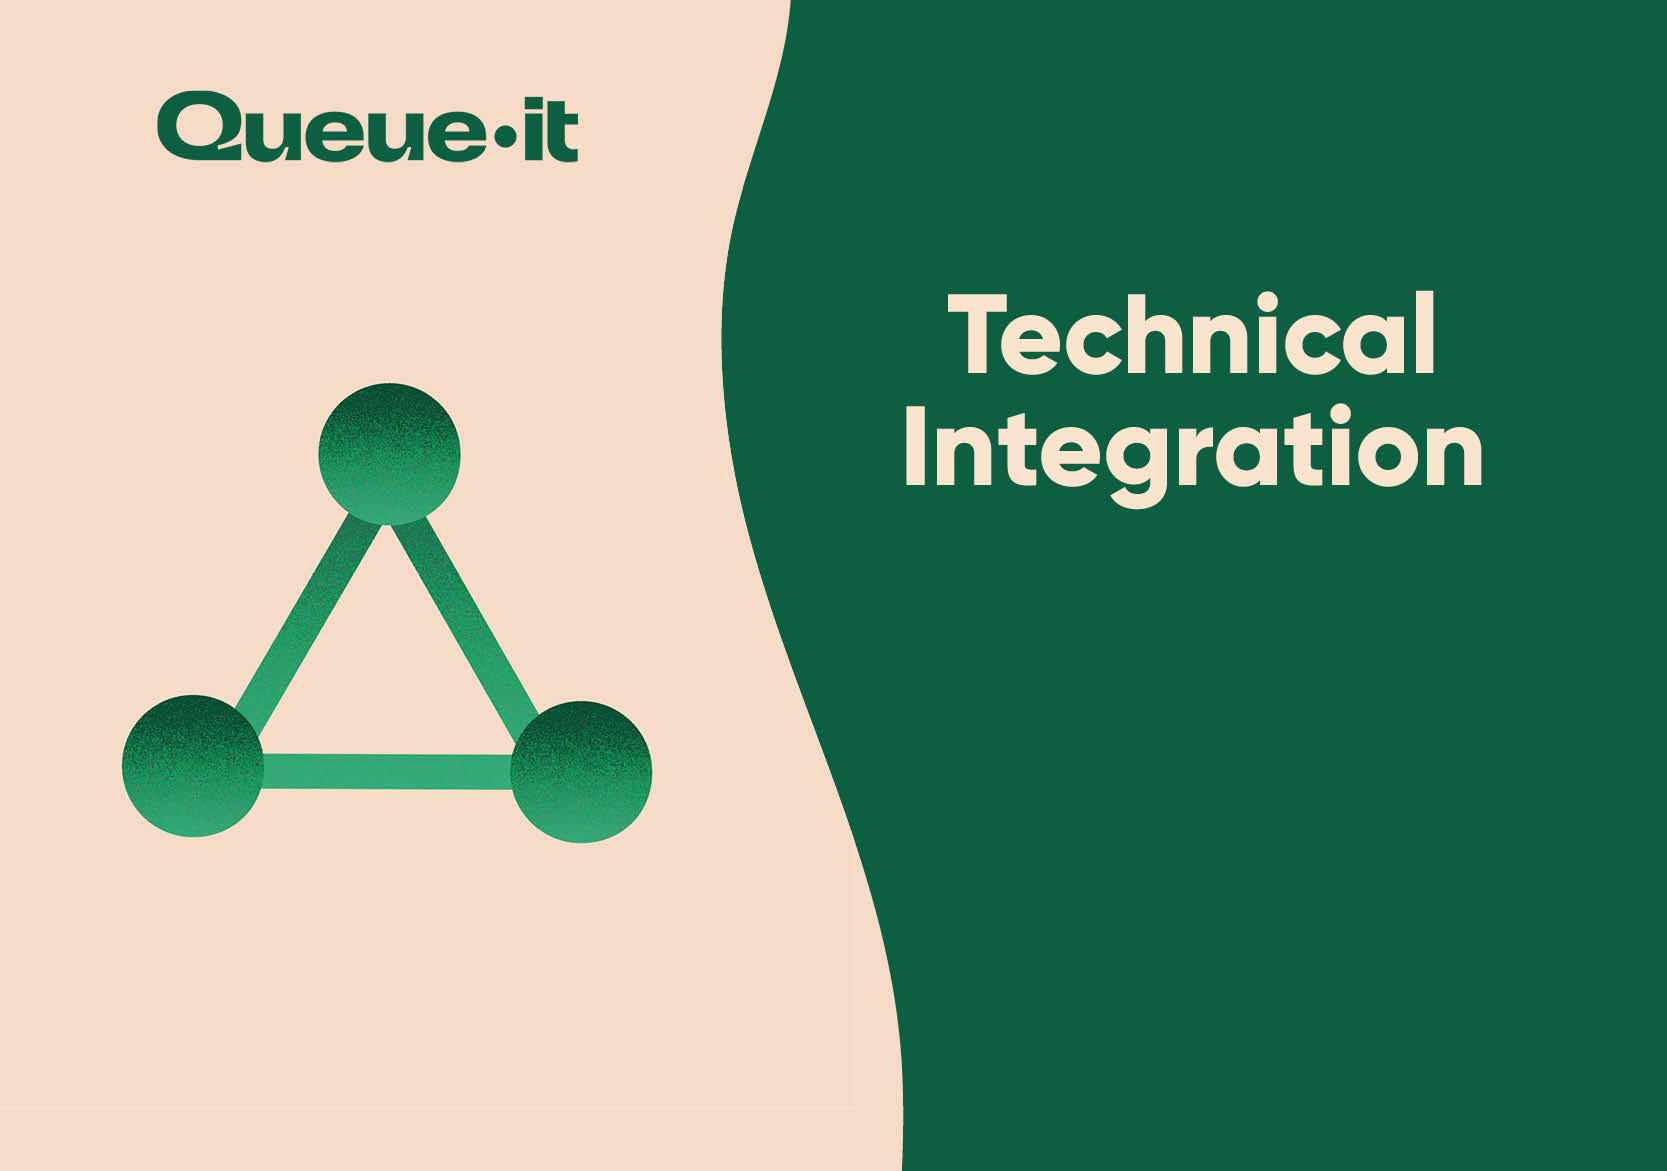 Queue-it Technical Integration white paper